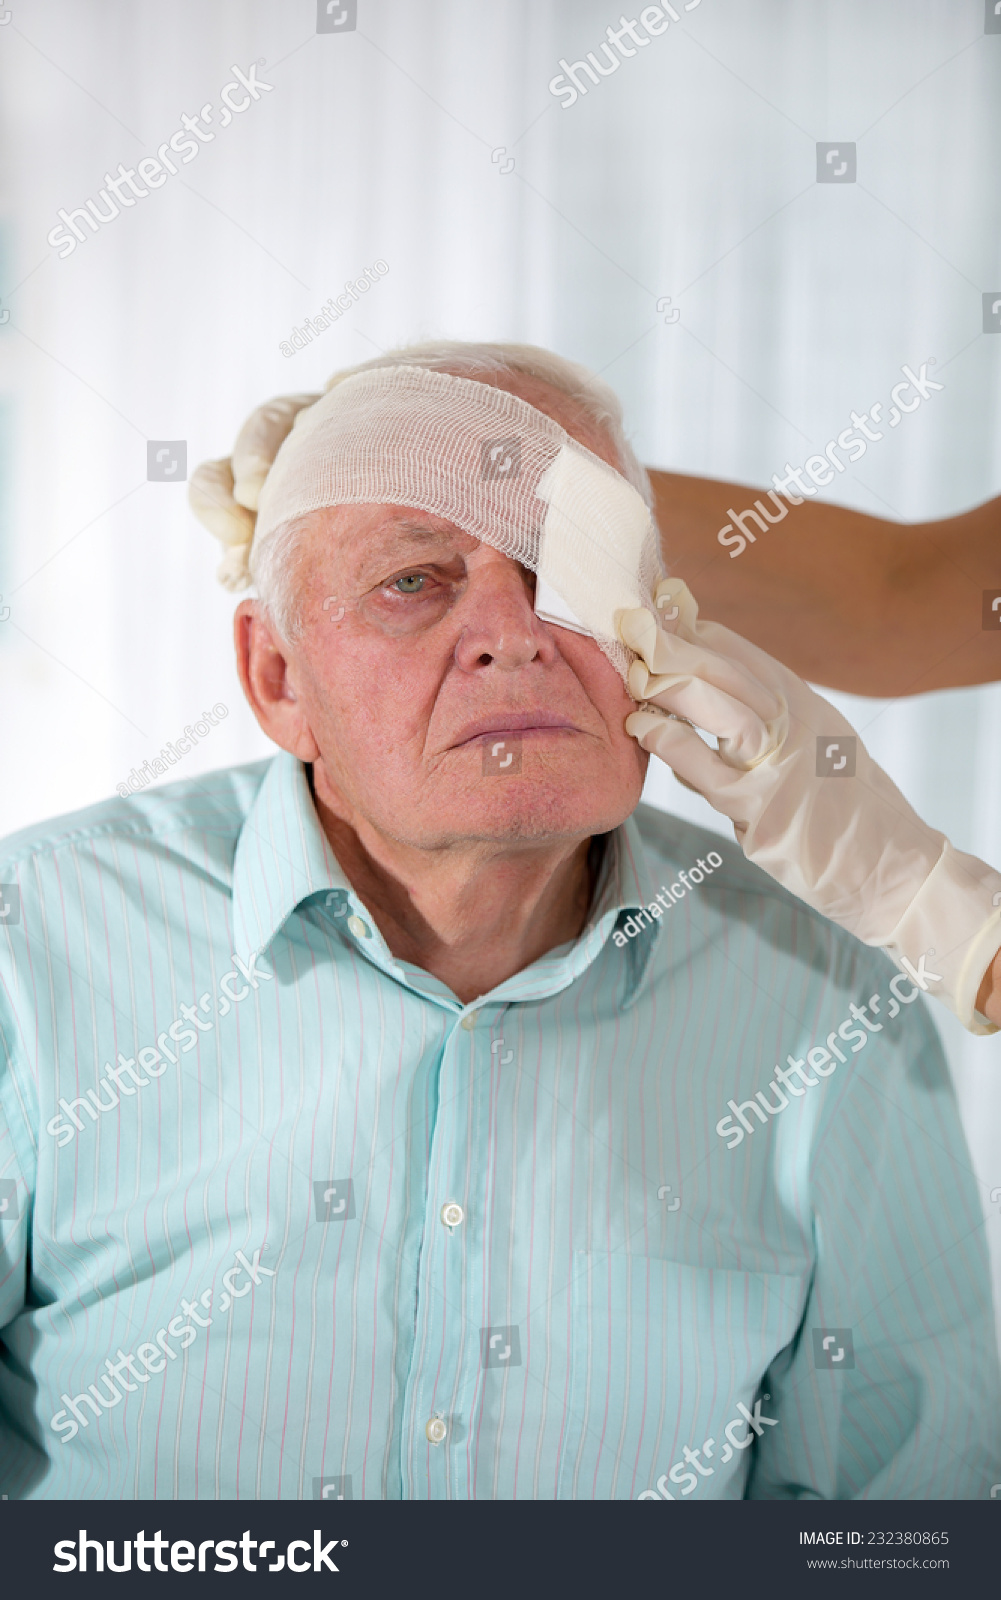 Man with eye bandage #232380865